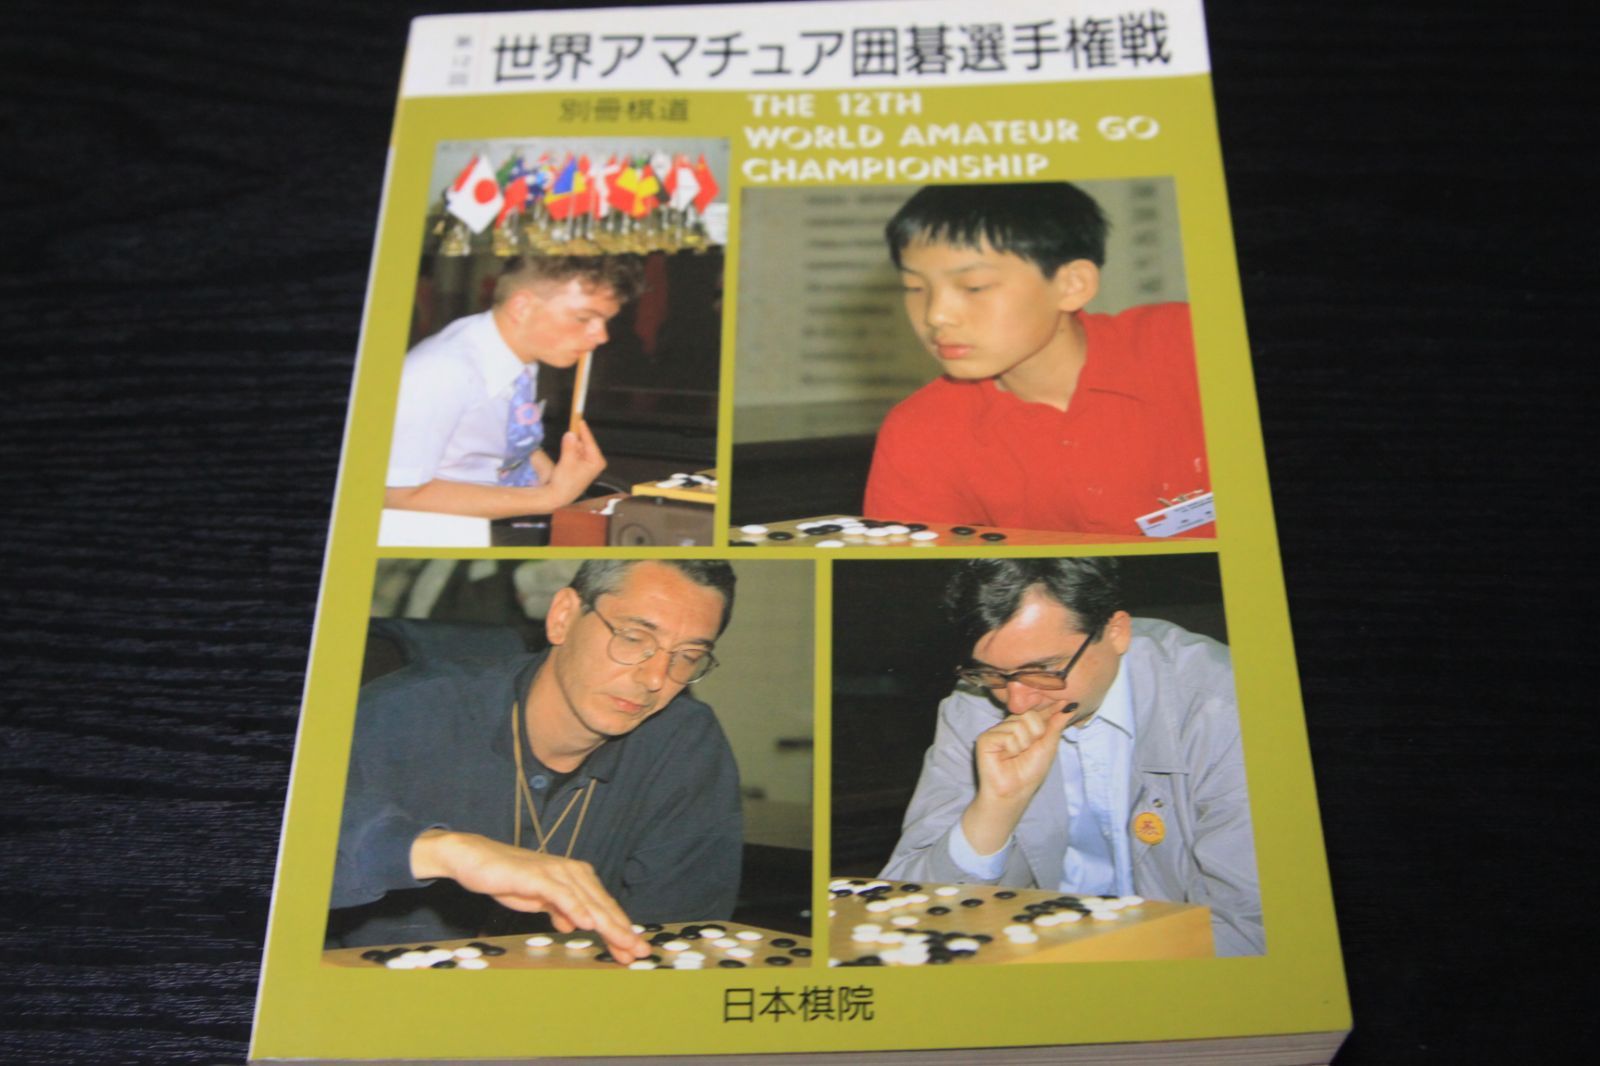 囲碁「別冊棋道 第1２回世界アマチュア囲碁選手権戦」 - 本のチカラ